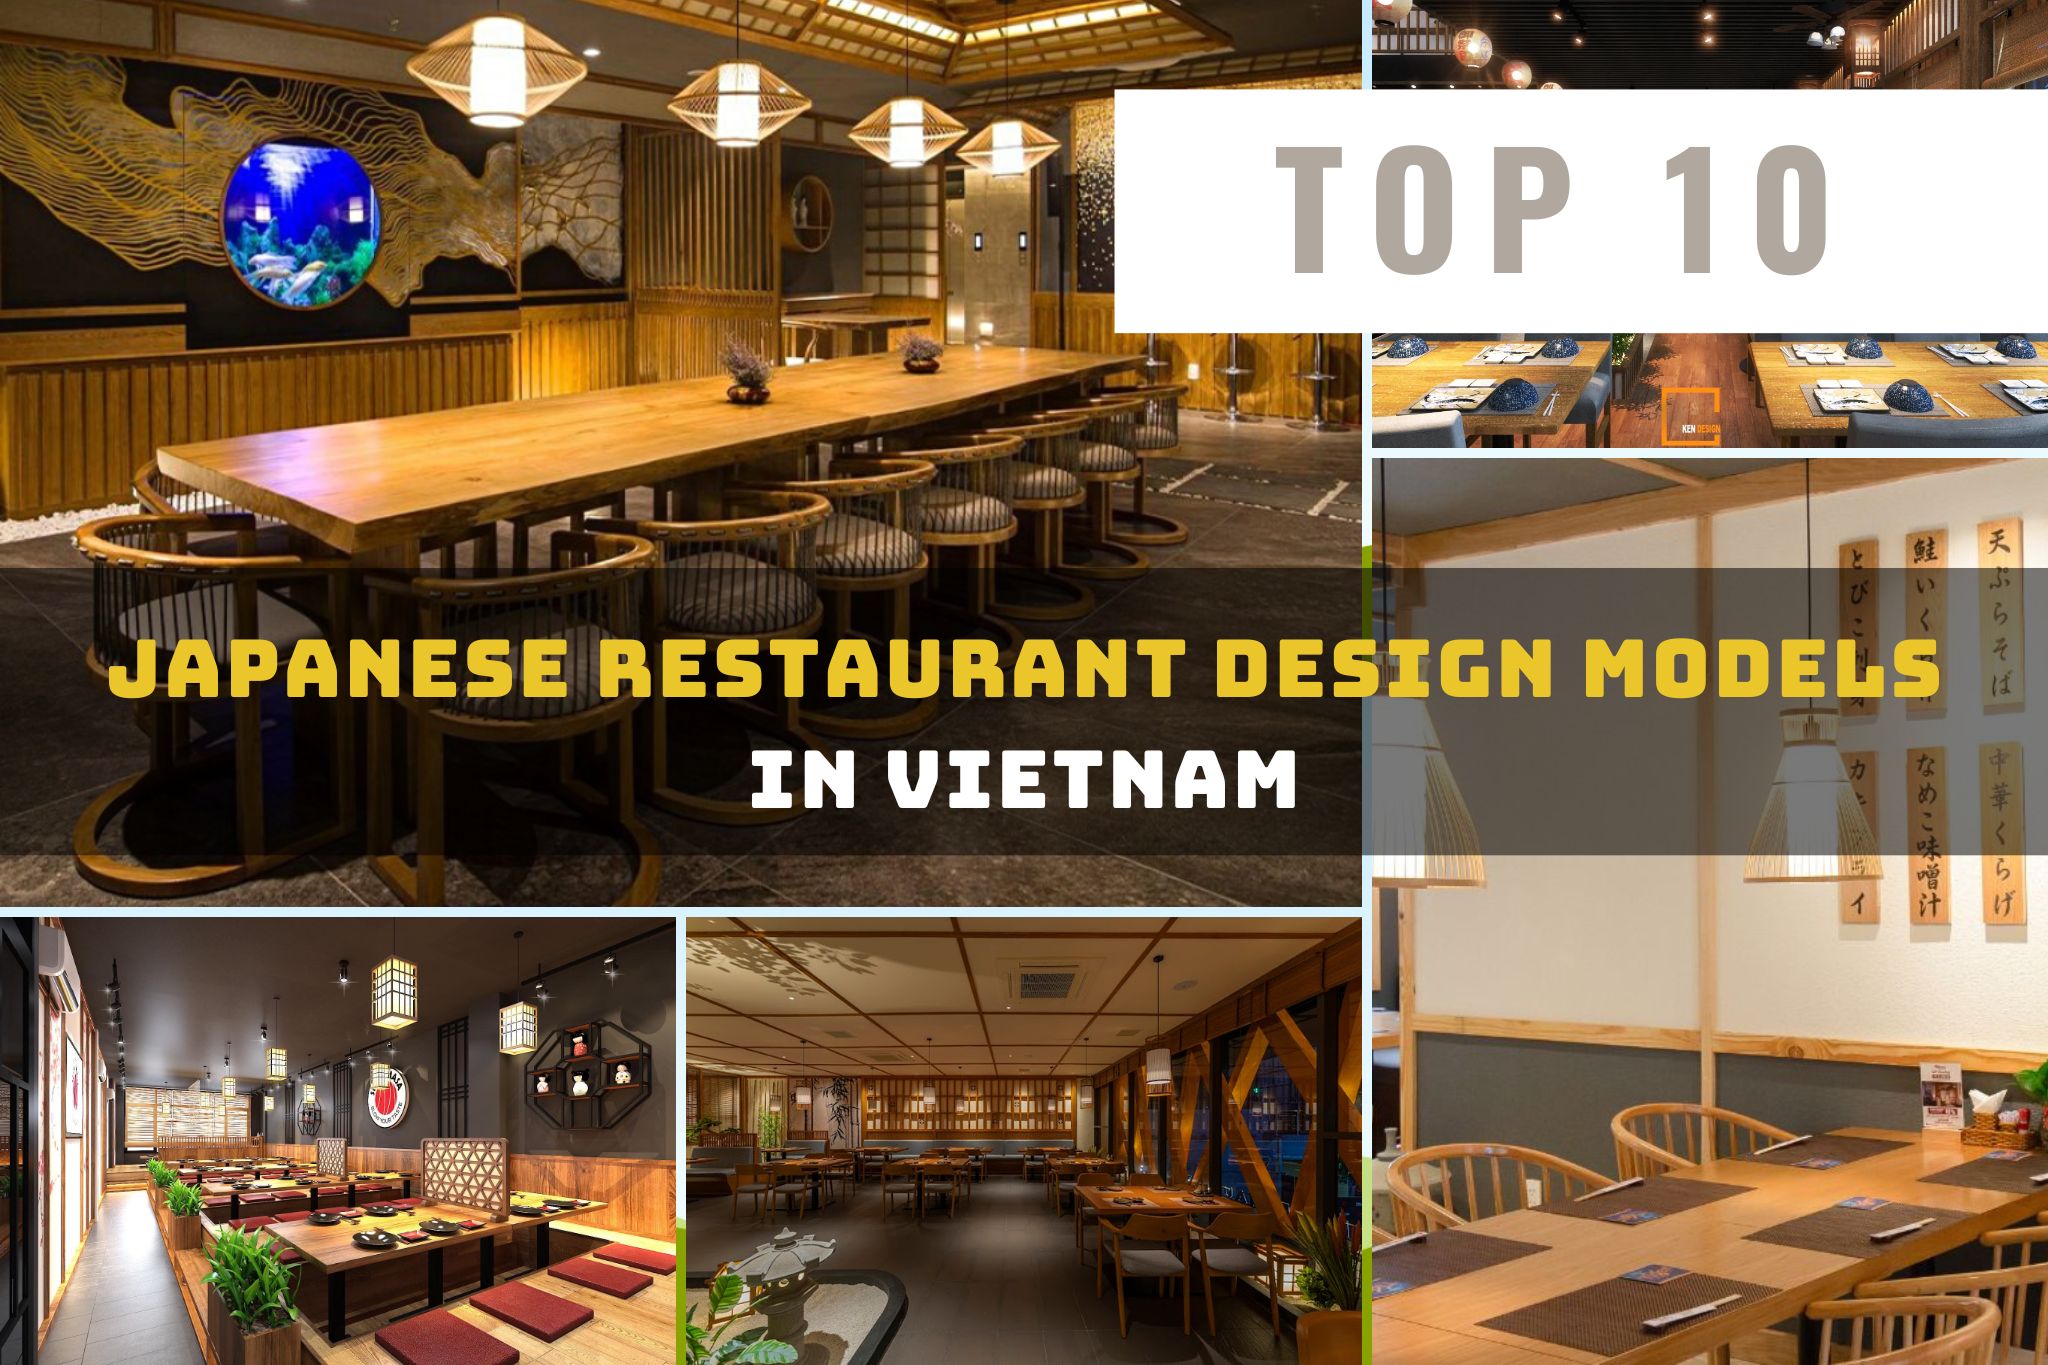 Japanese Restaurant Design Models in Vietnam